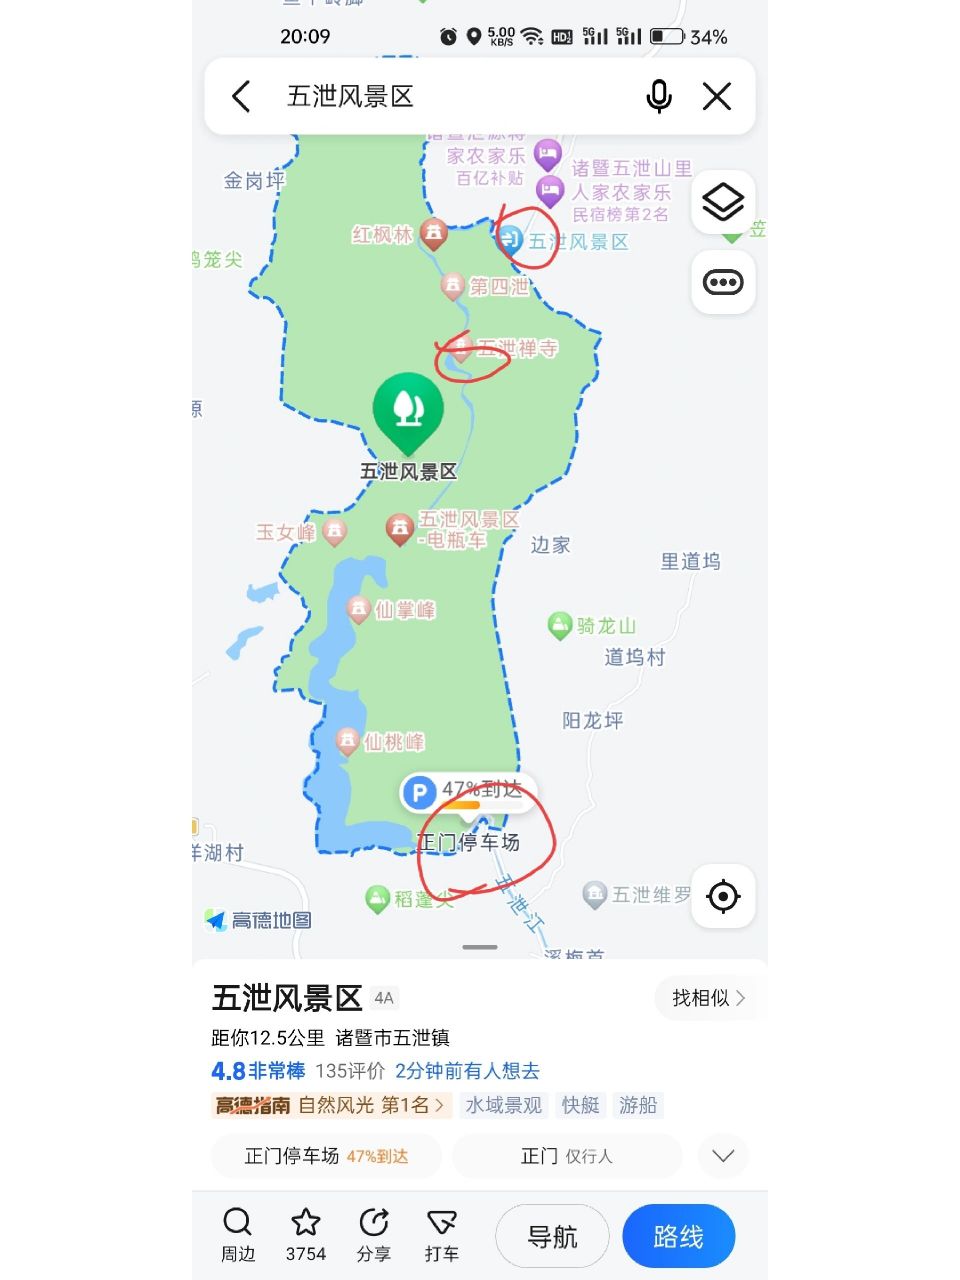 暨阳湖公园地图图片